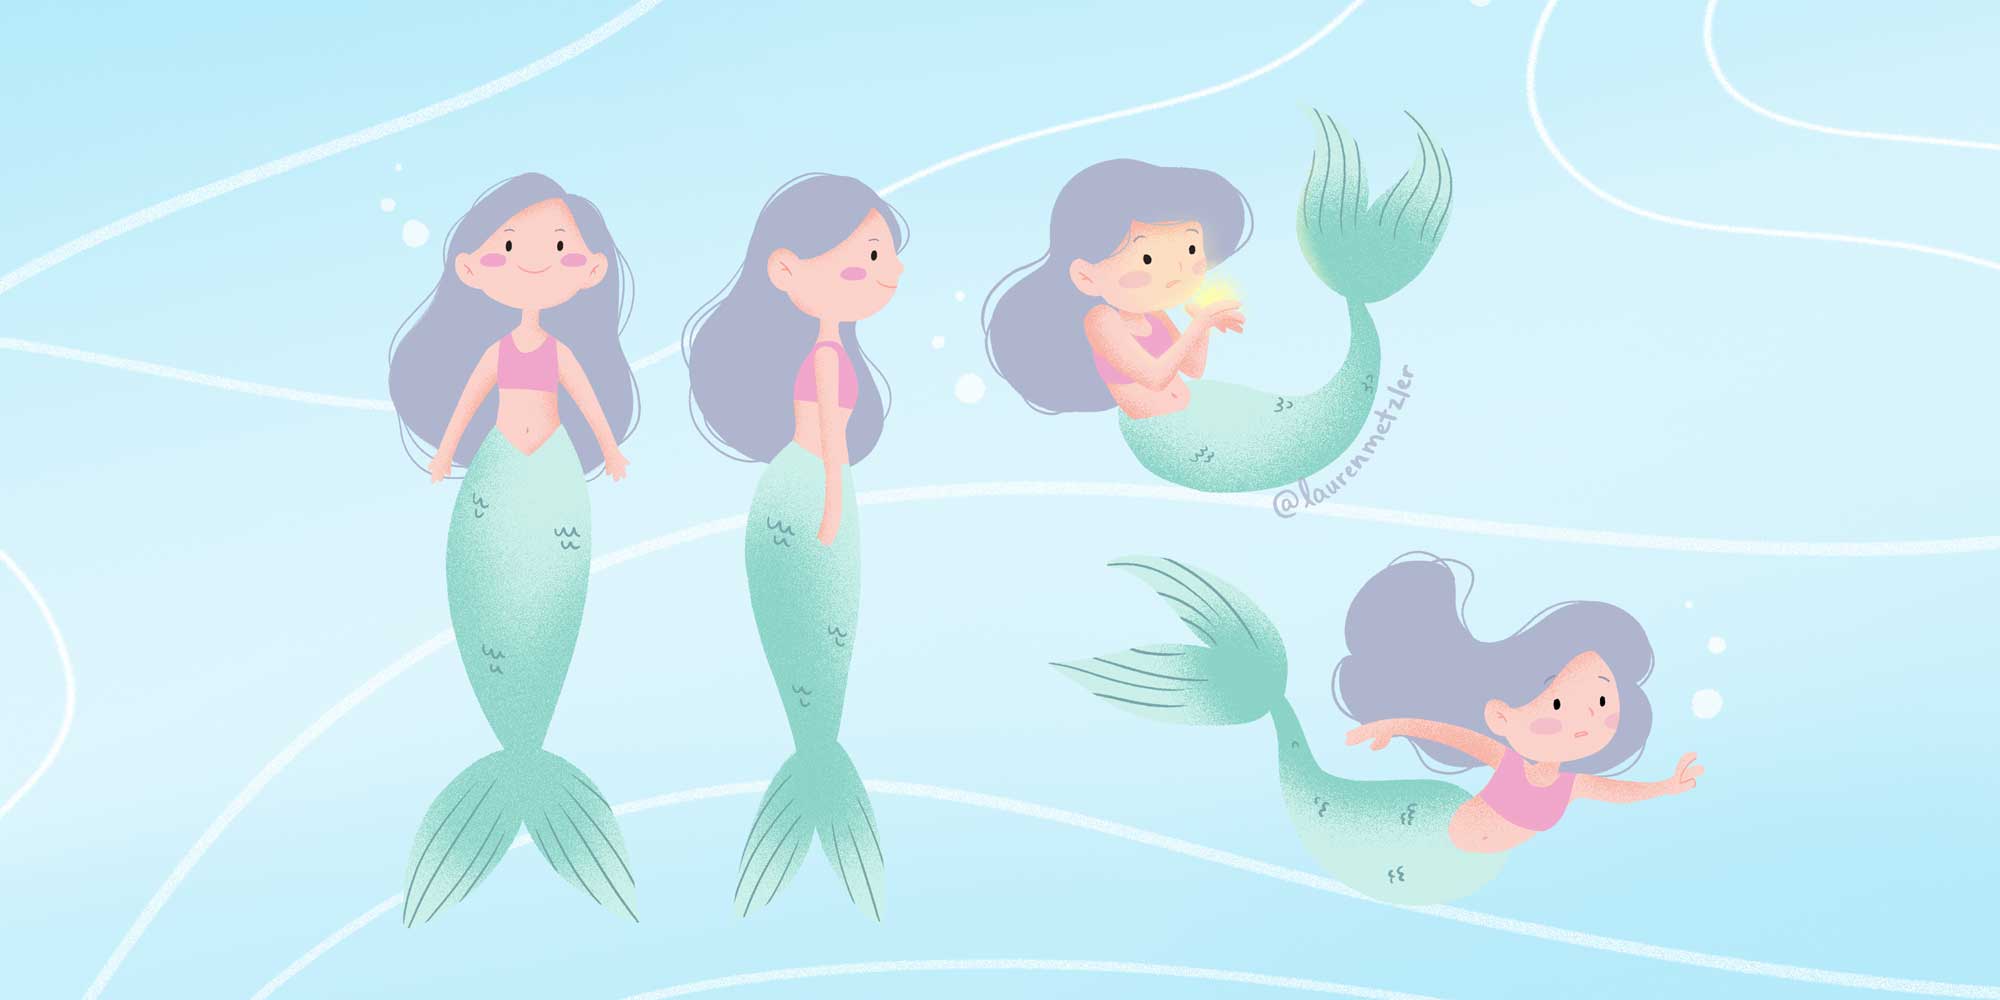 Mermaid Children’s Book illustration by Lauren Metzler